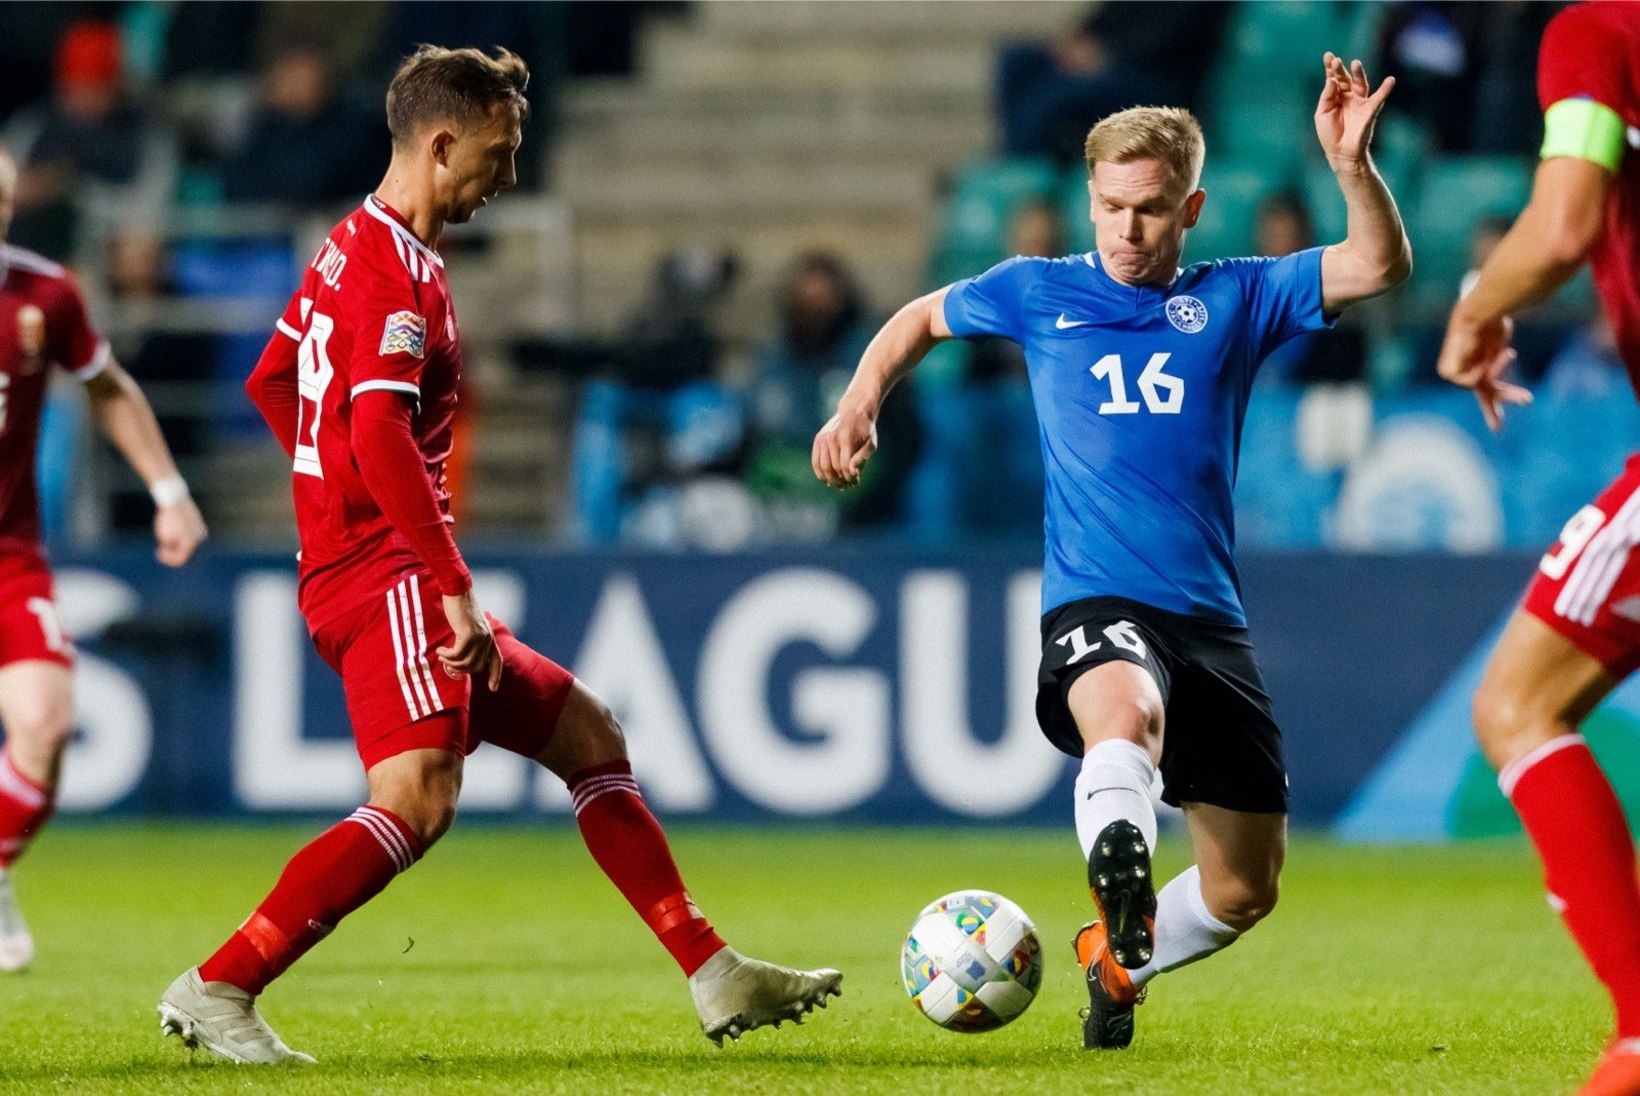 VIDEO | Eesti jalgpallikoondislane lõi Euroopa liiga matšis ülitähtsa värava, Mets ja AIK jäid Celticu vastu jänni 